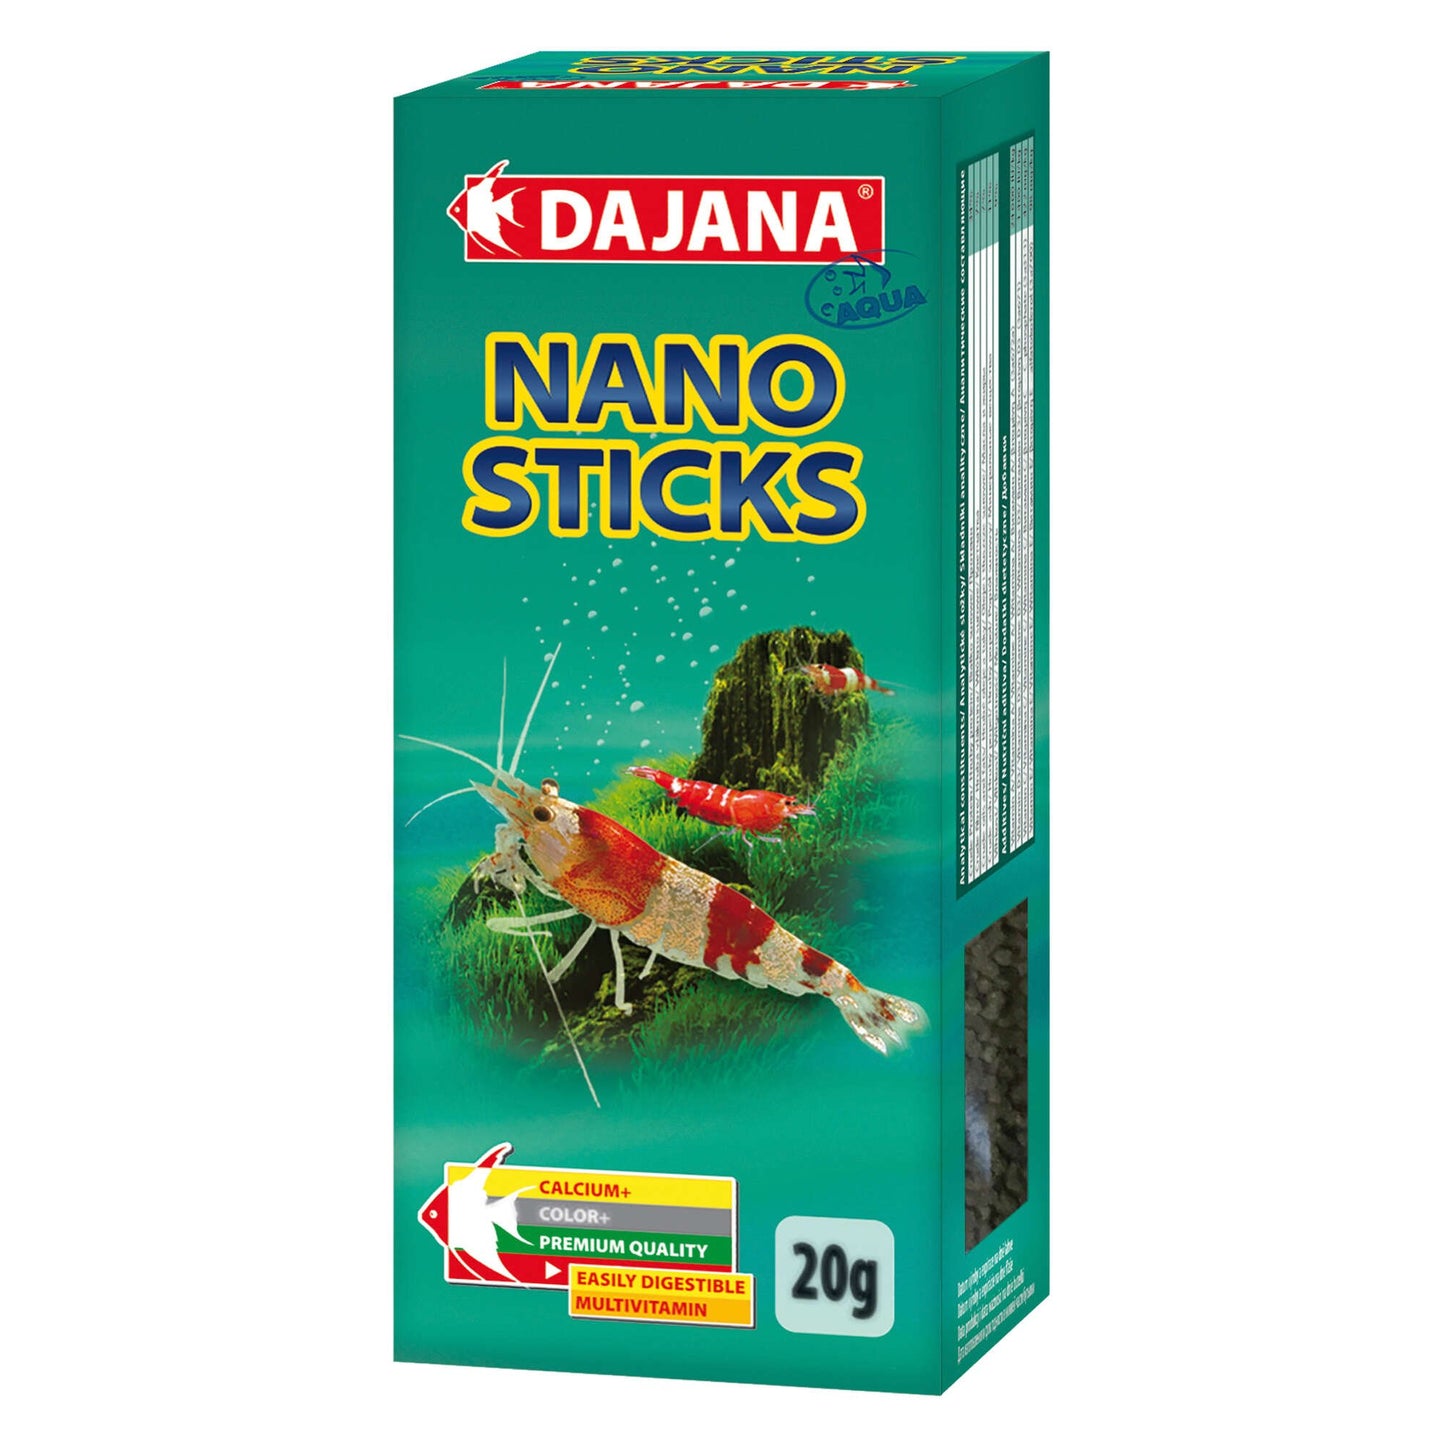 Alimento NANO STICKS de DAJANA empaquetado